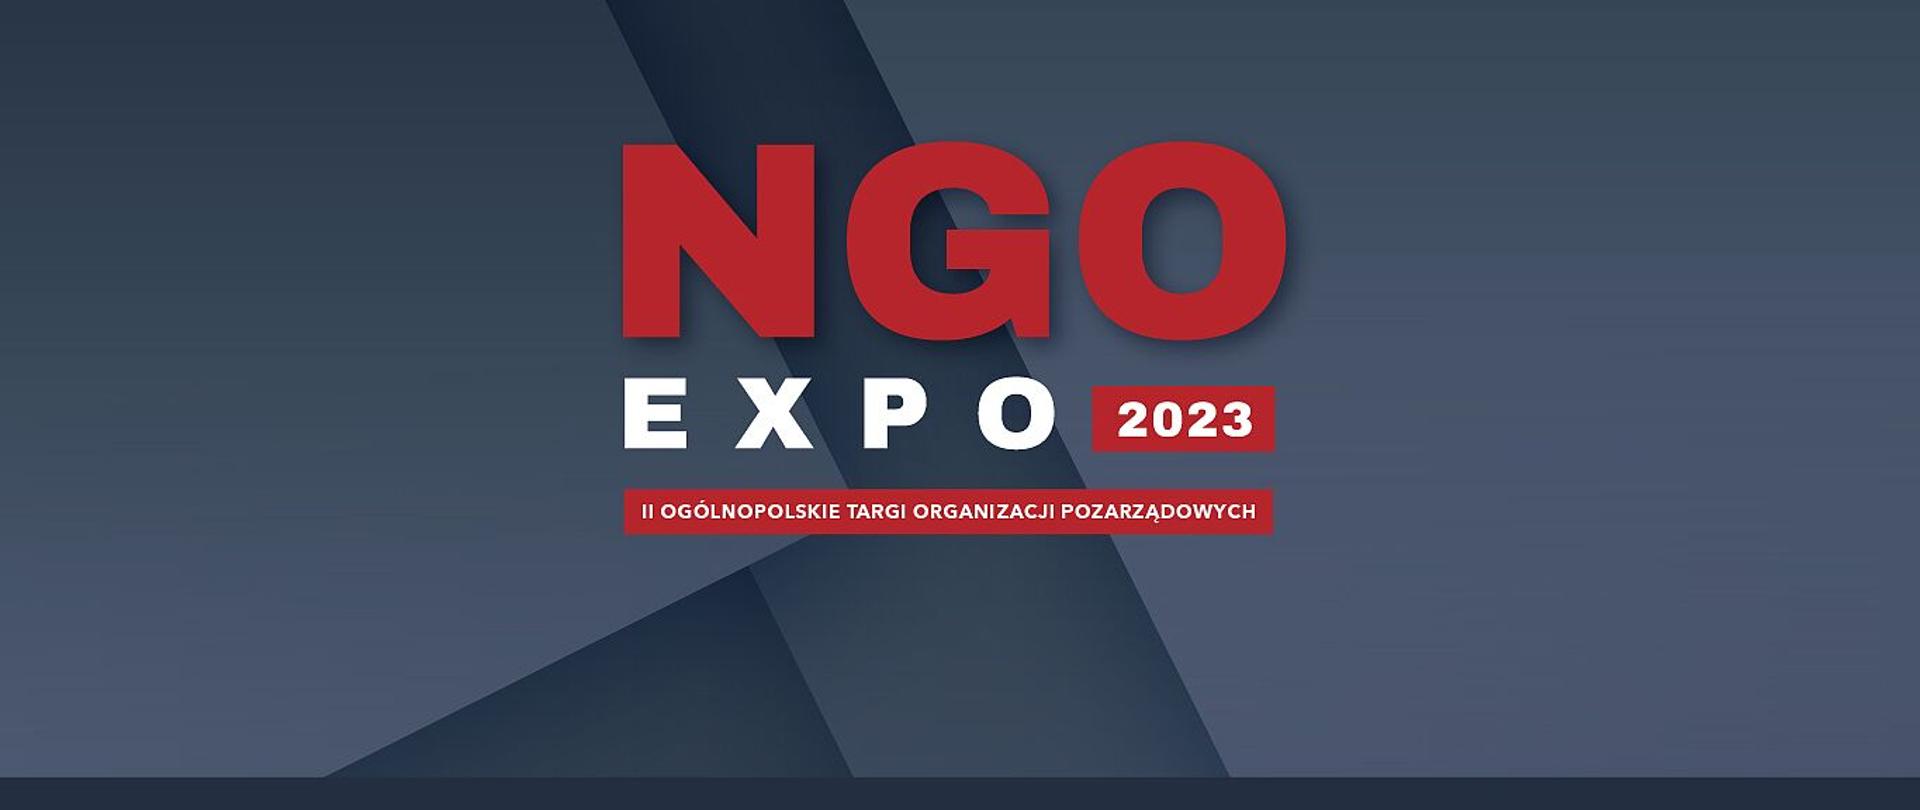 II Ogólnopolskie Targi Organizacji Pozarządowych NGO-EXPO 2023